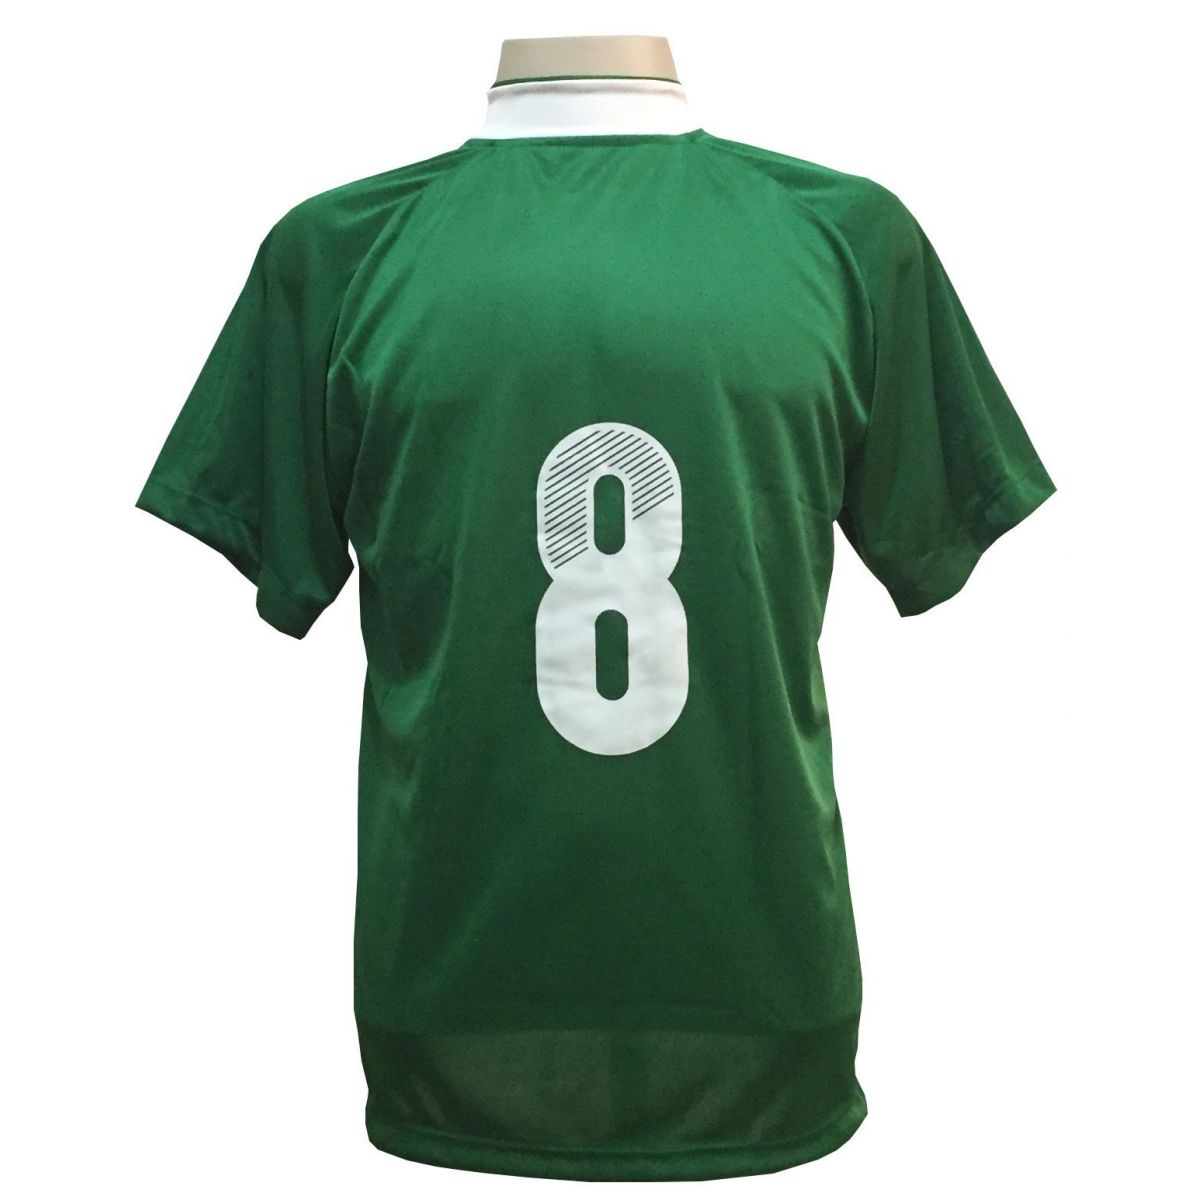 Uniforme Esportivo com 18 camisas modelo Milan Verde/Branco + 18 calções modelo Madrid Verde + Brindes